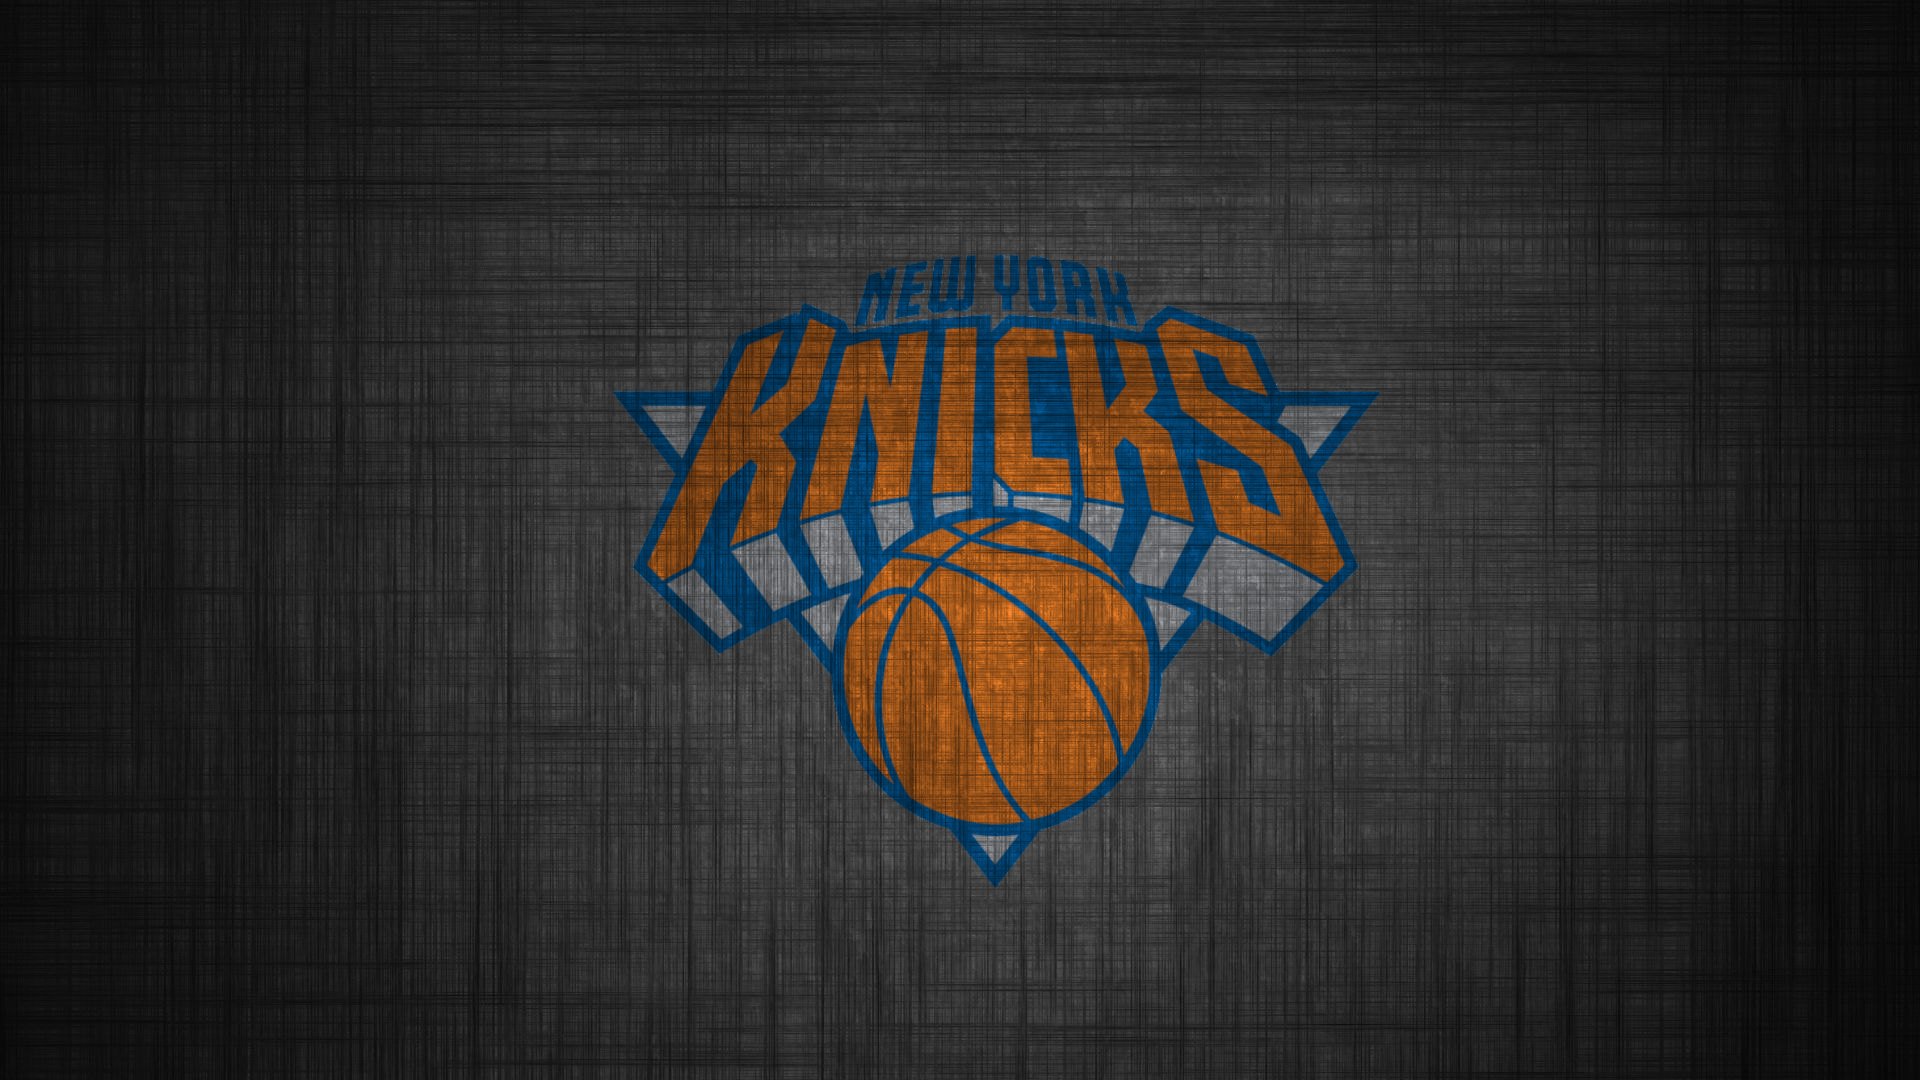 New York Knicks Wallpaper For iPhone Festival